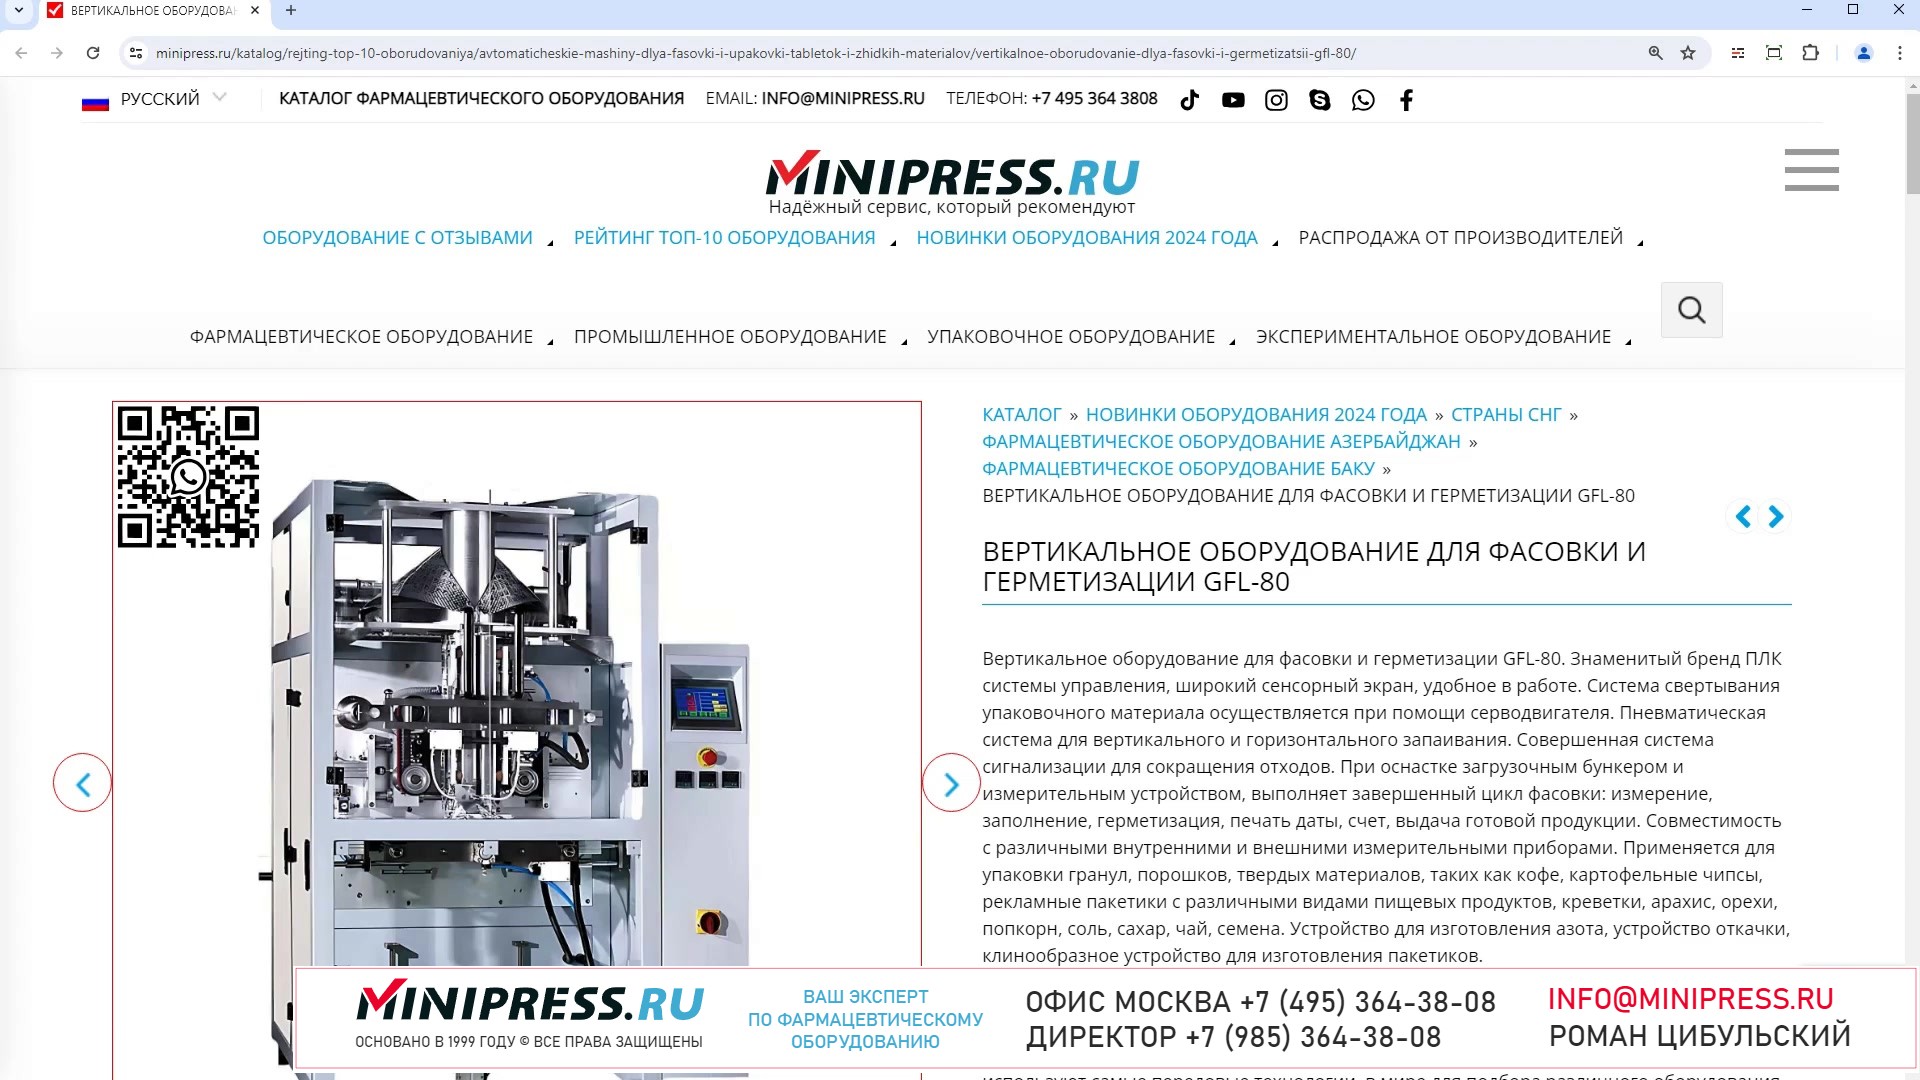 Minipress.ru Вертикальное оборудование для фасовки и герметизации GFL-80